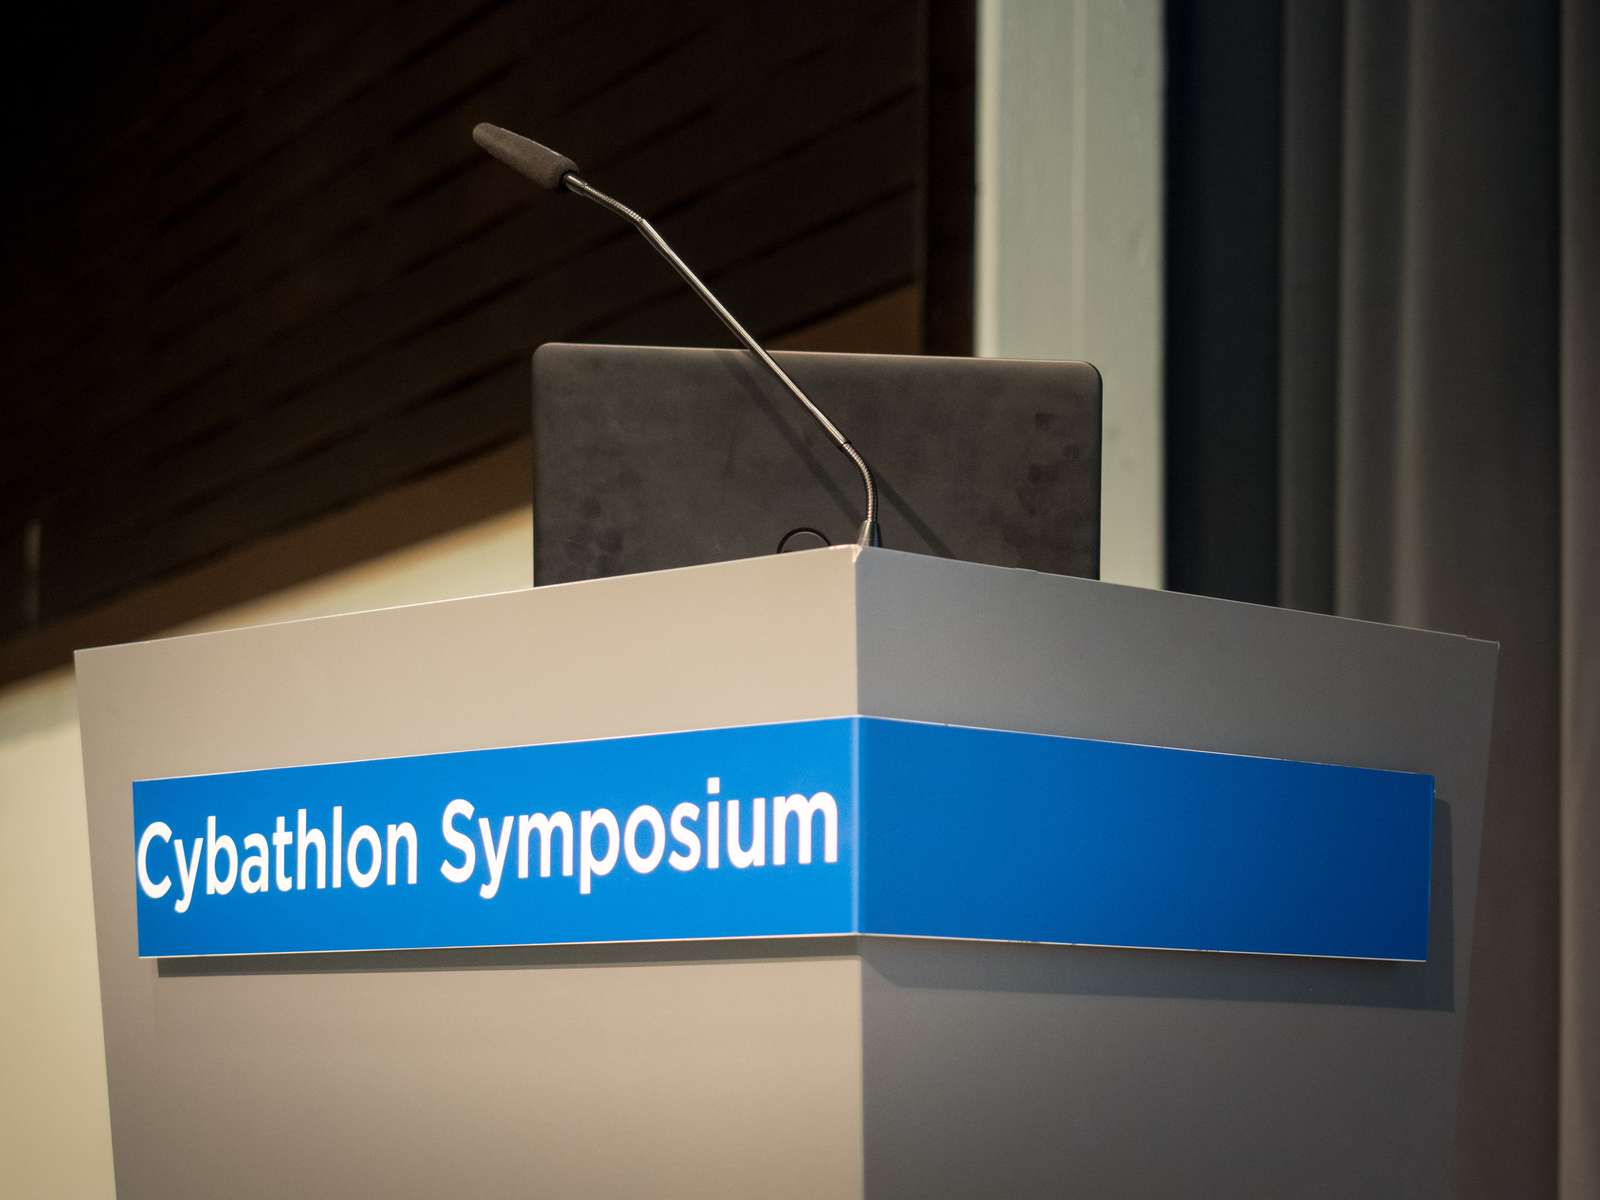 CYBATHLON Symposium 2016